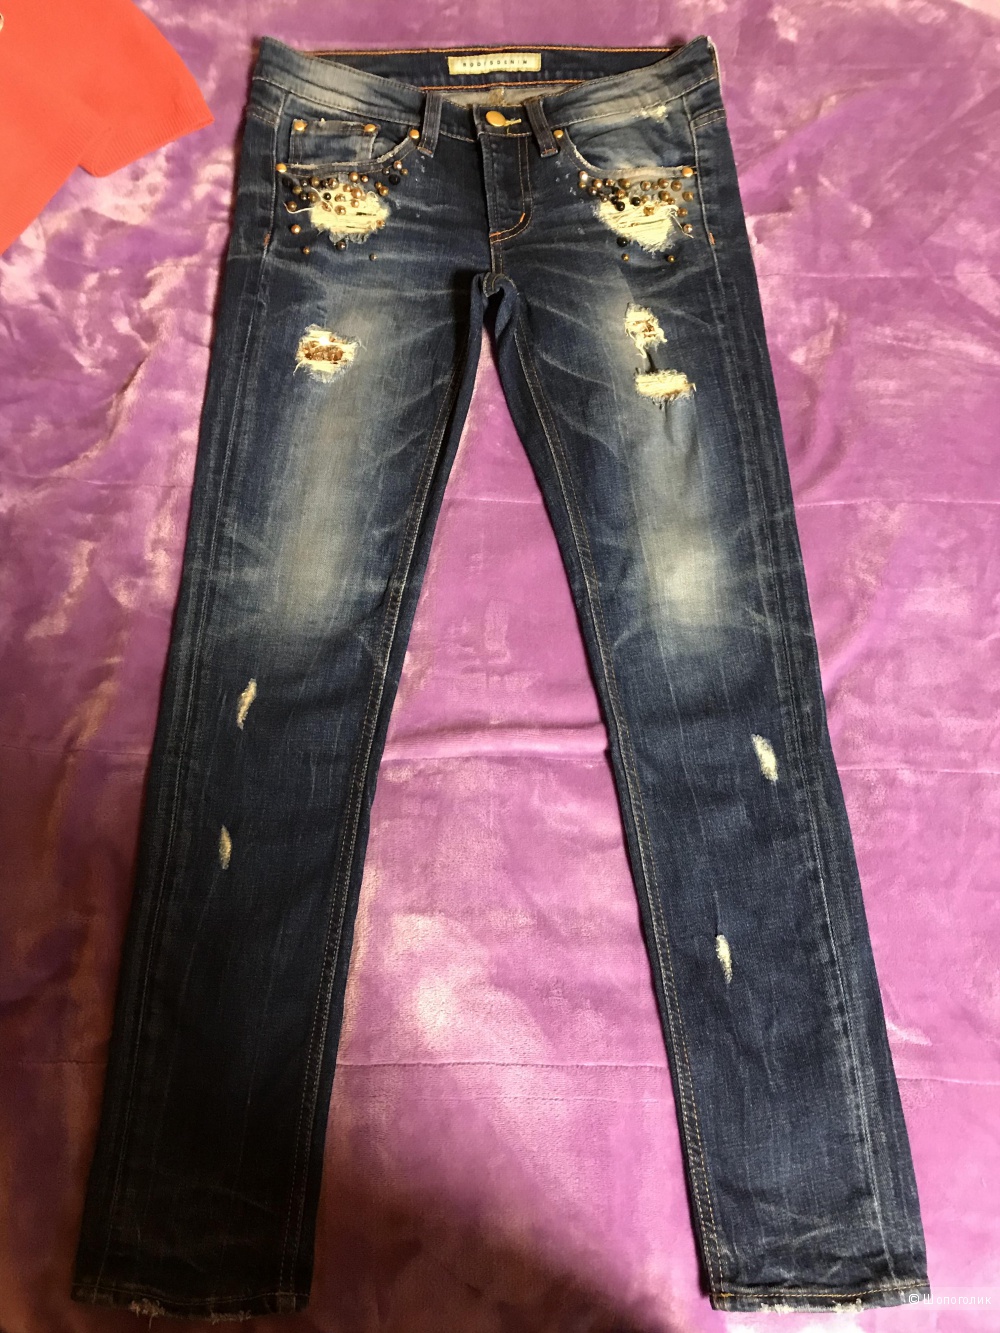 Комплект из трёх вещей , джинсы RODIS DENIM, кофта Glenfiald и шарфик размер 42-44